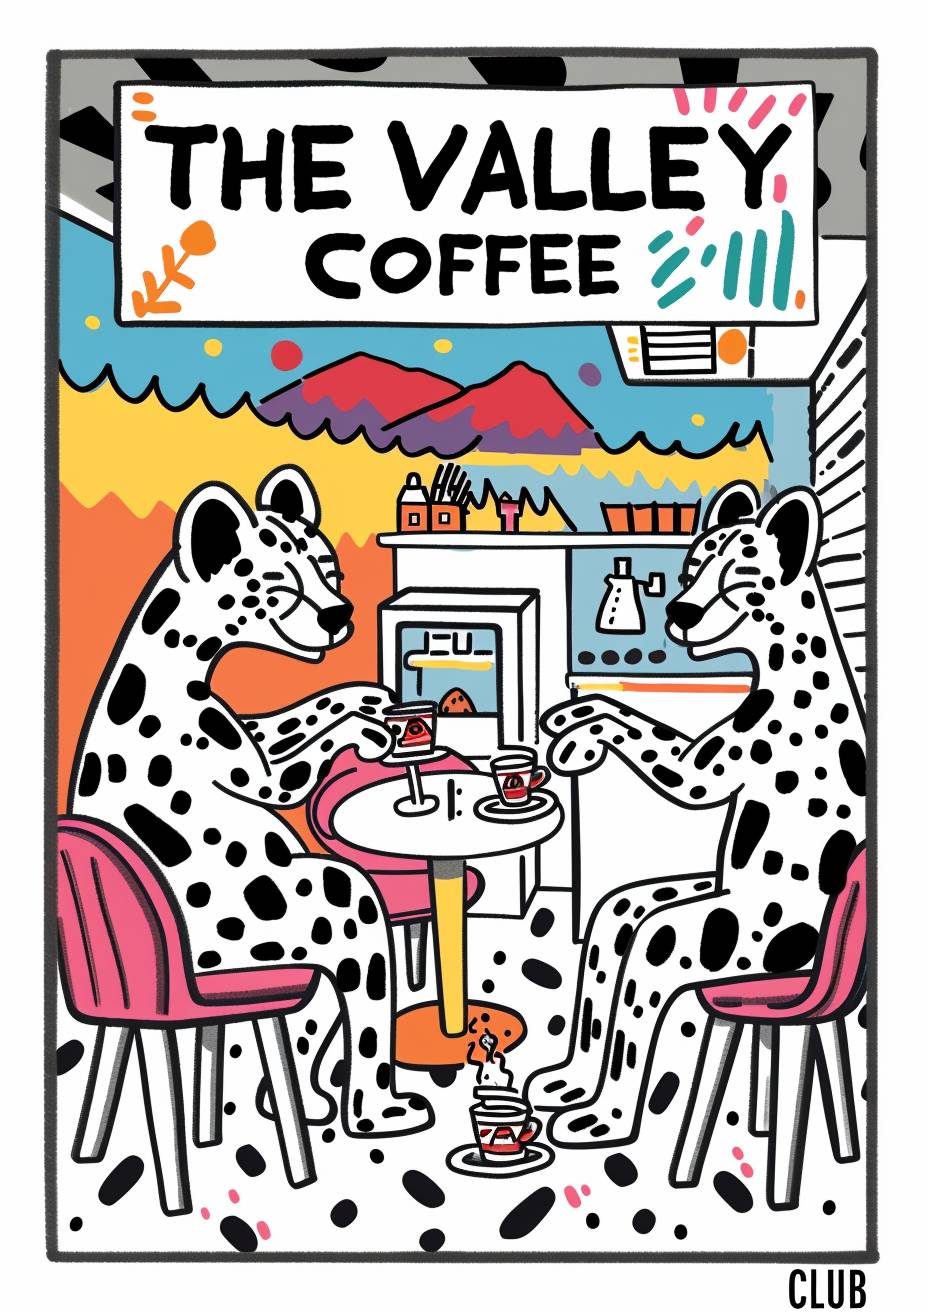 キース・ヘリング風のスタイルで、ハイエナがコーヒーを飲んでいるシンプルな絵があります。黒と白の色調に明るい色が施され、絵の上には「バレーコーヒークラブ」と書かれています。